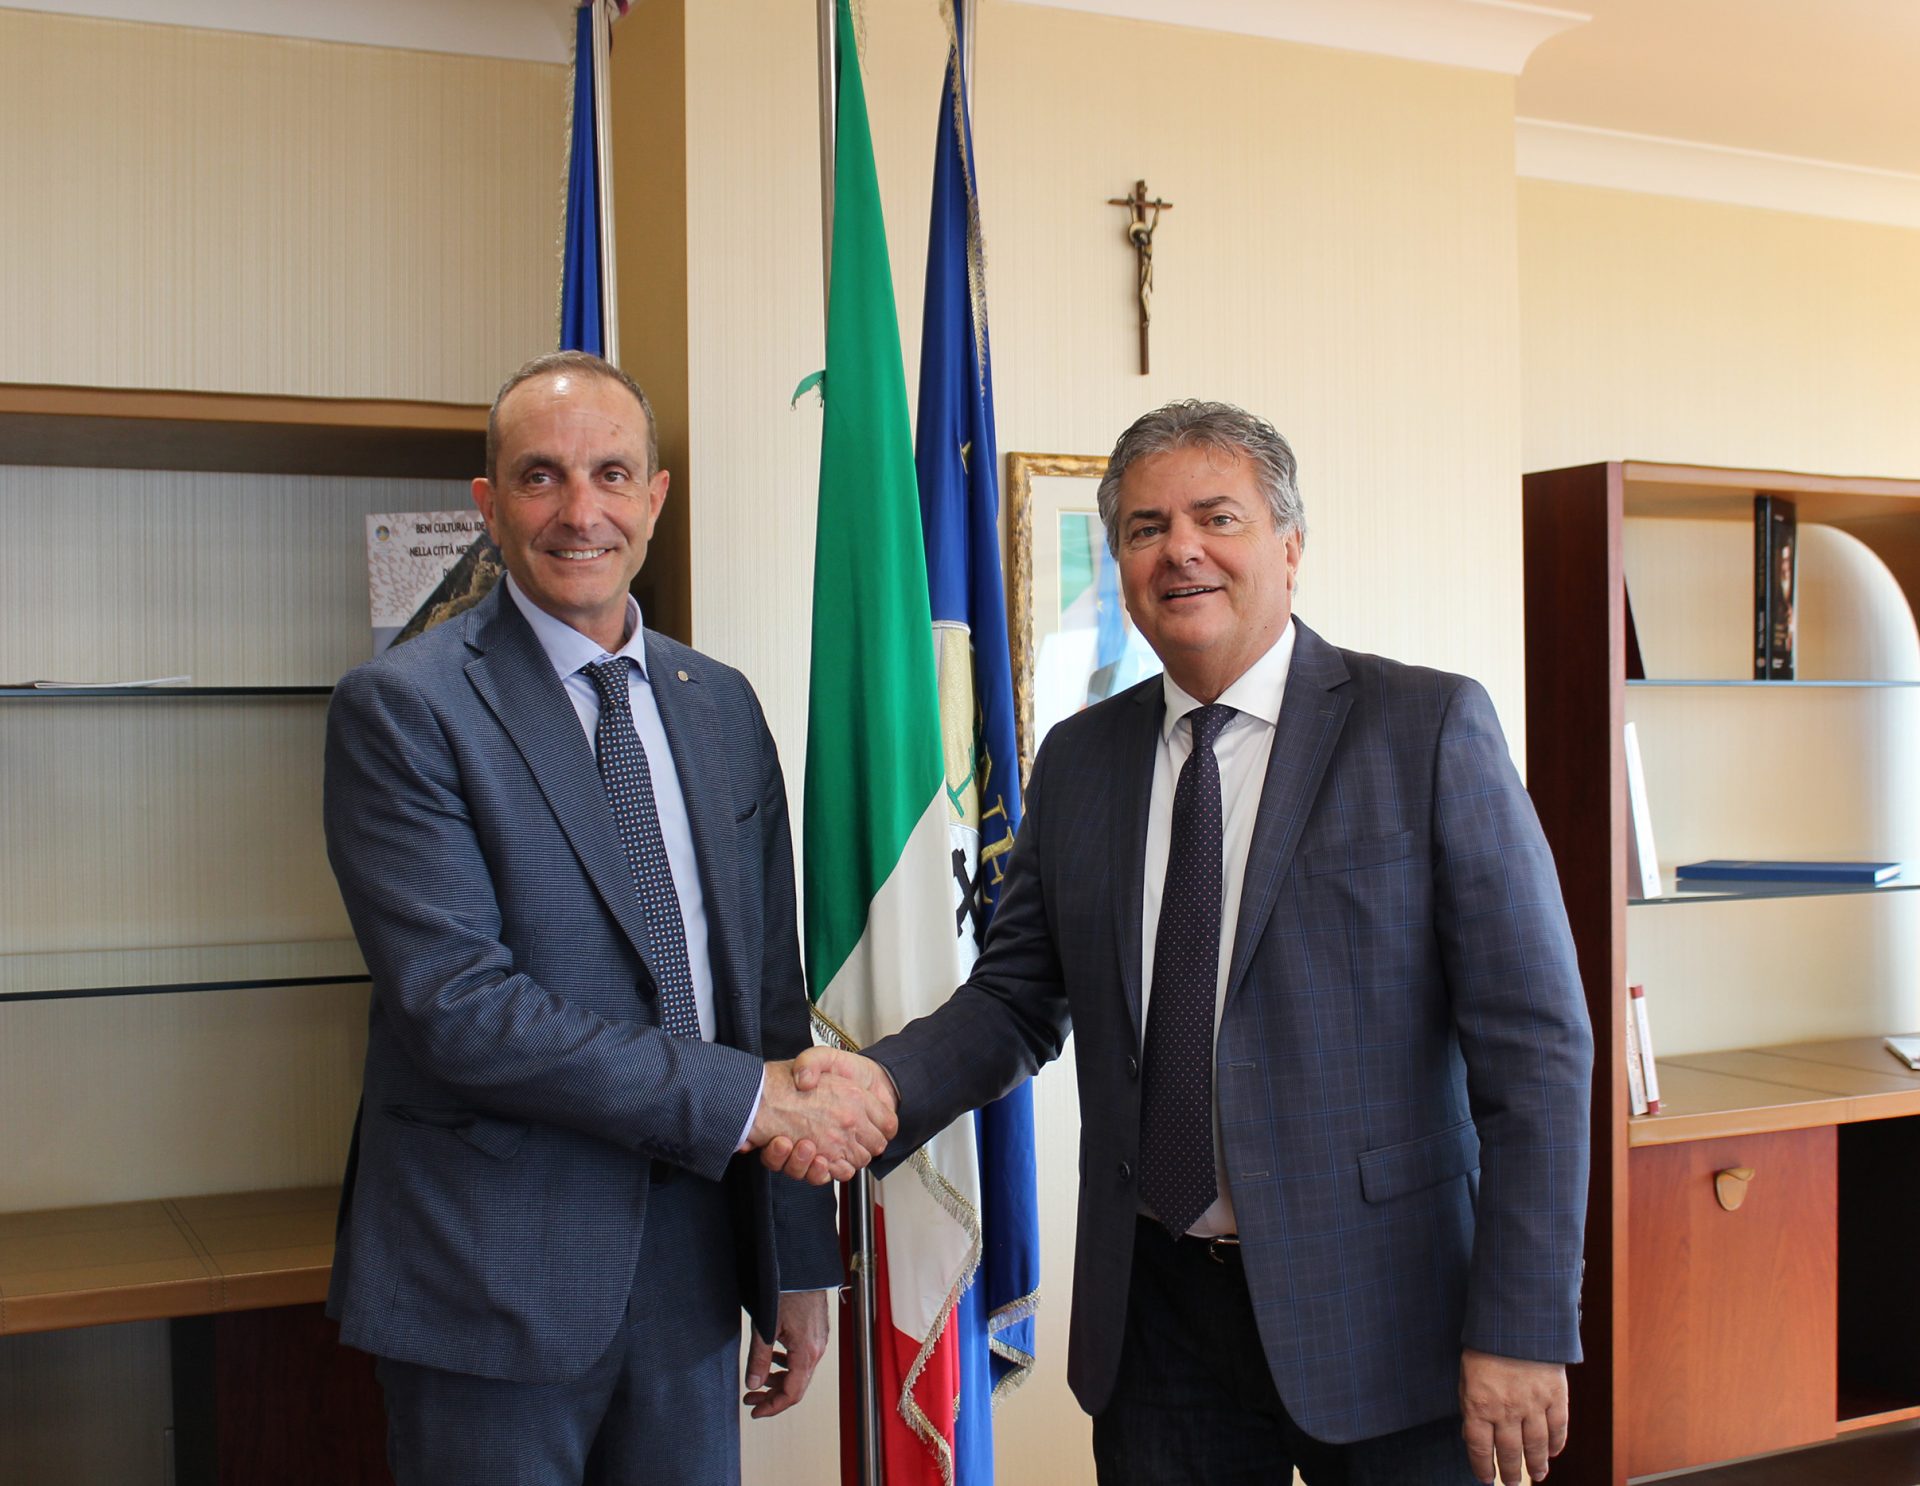 Università Mediterranea, il rettore Zimbalatti incontra Mancuso: prove di sinergia tra istituzioni